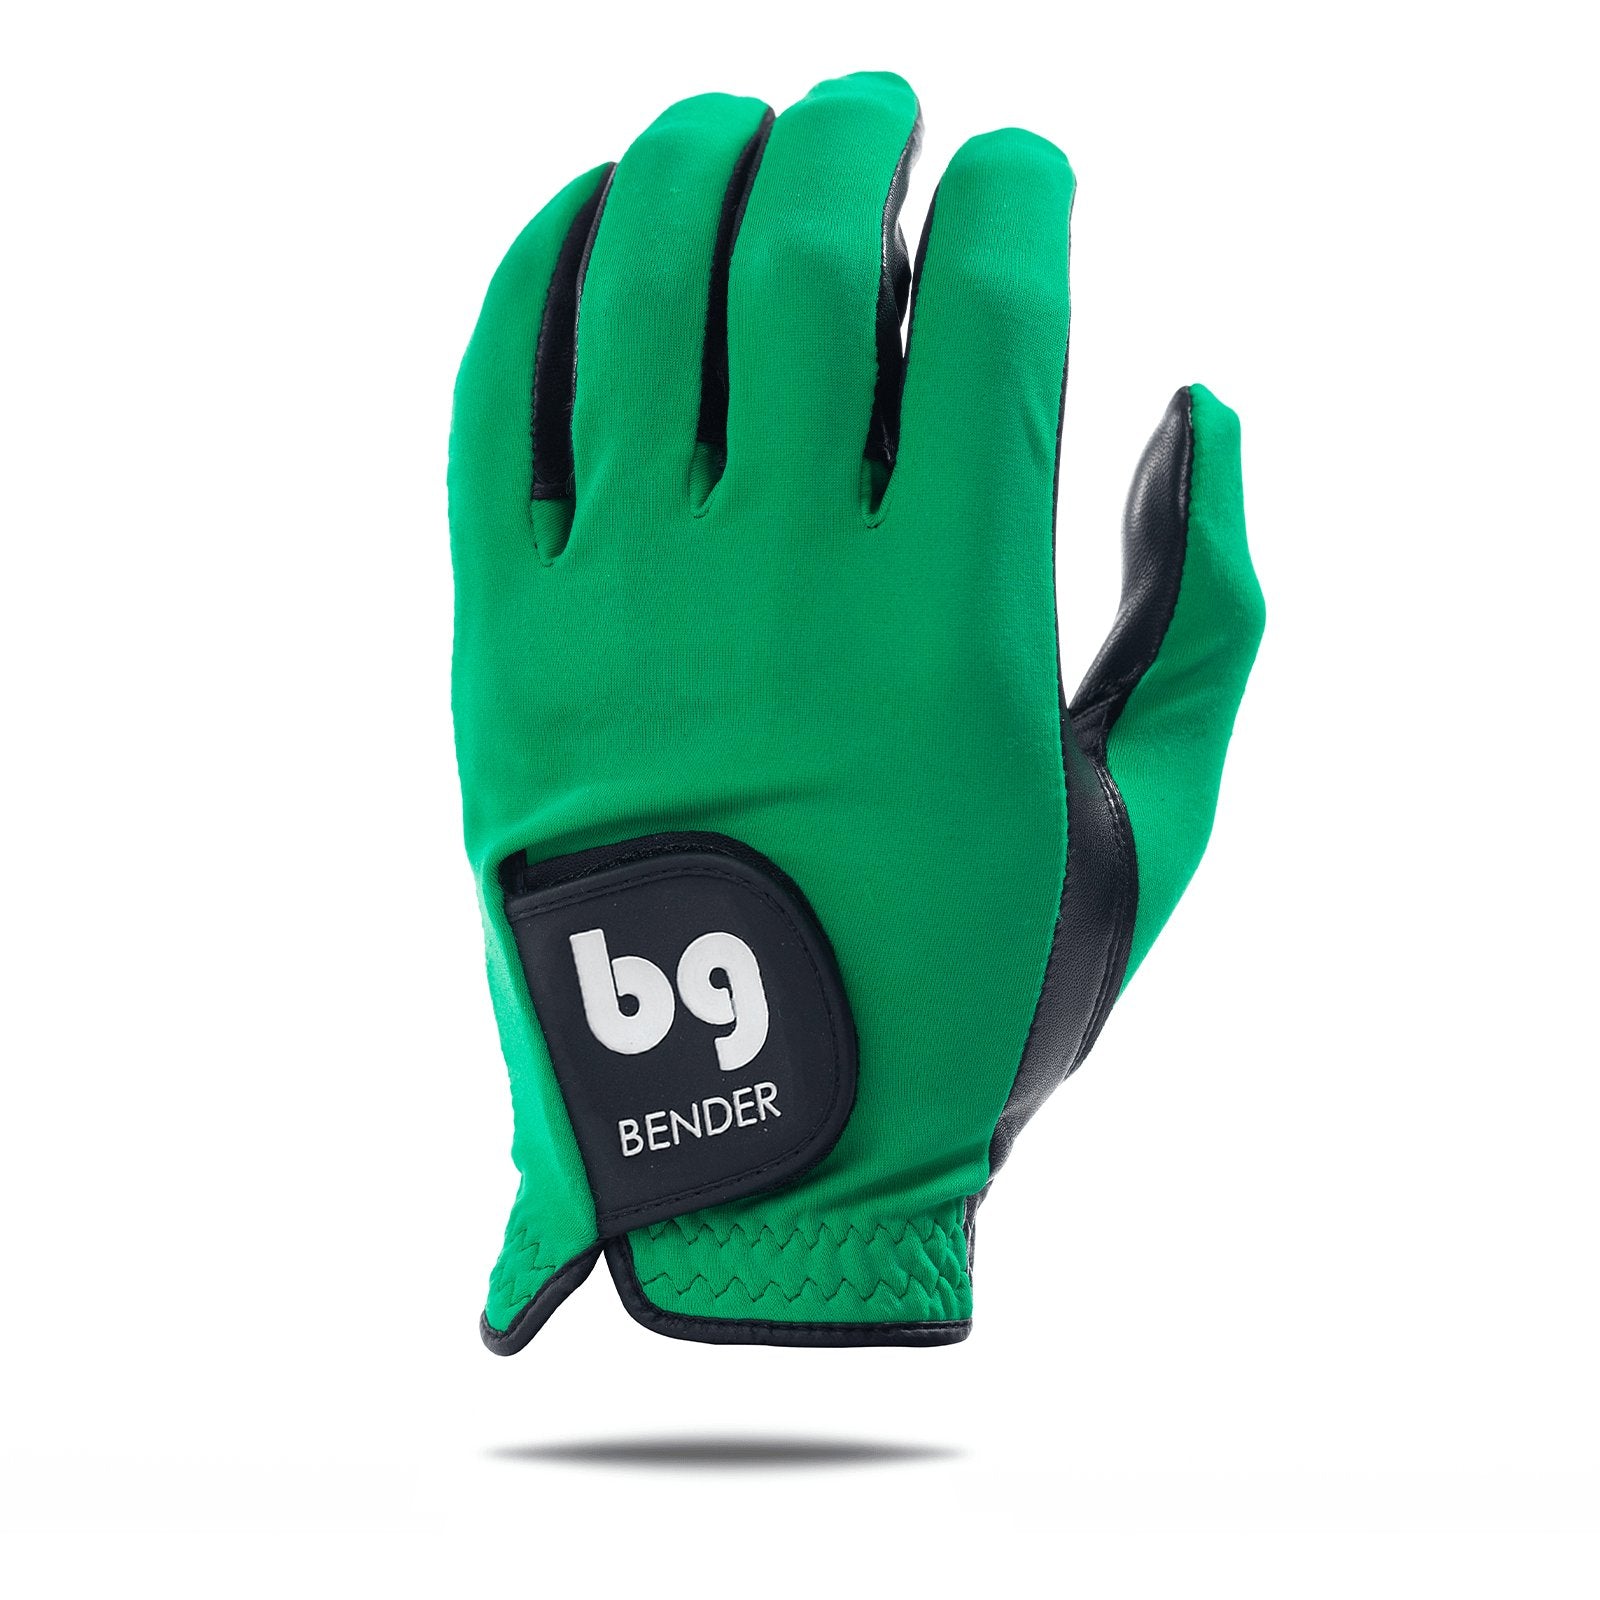 Green Spandex Golf Glove - Bender Gloves